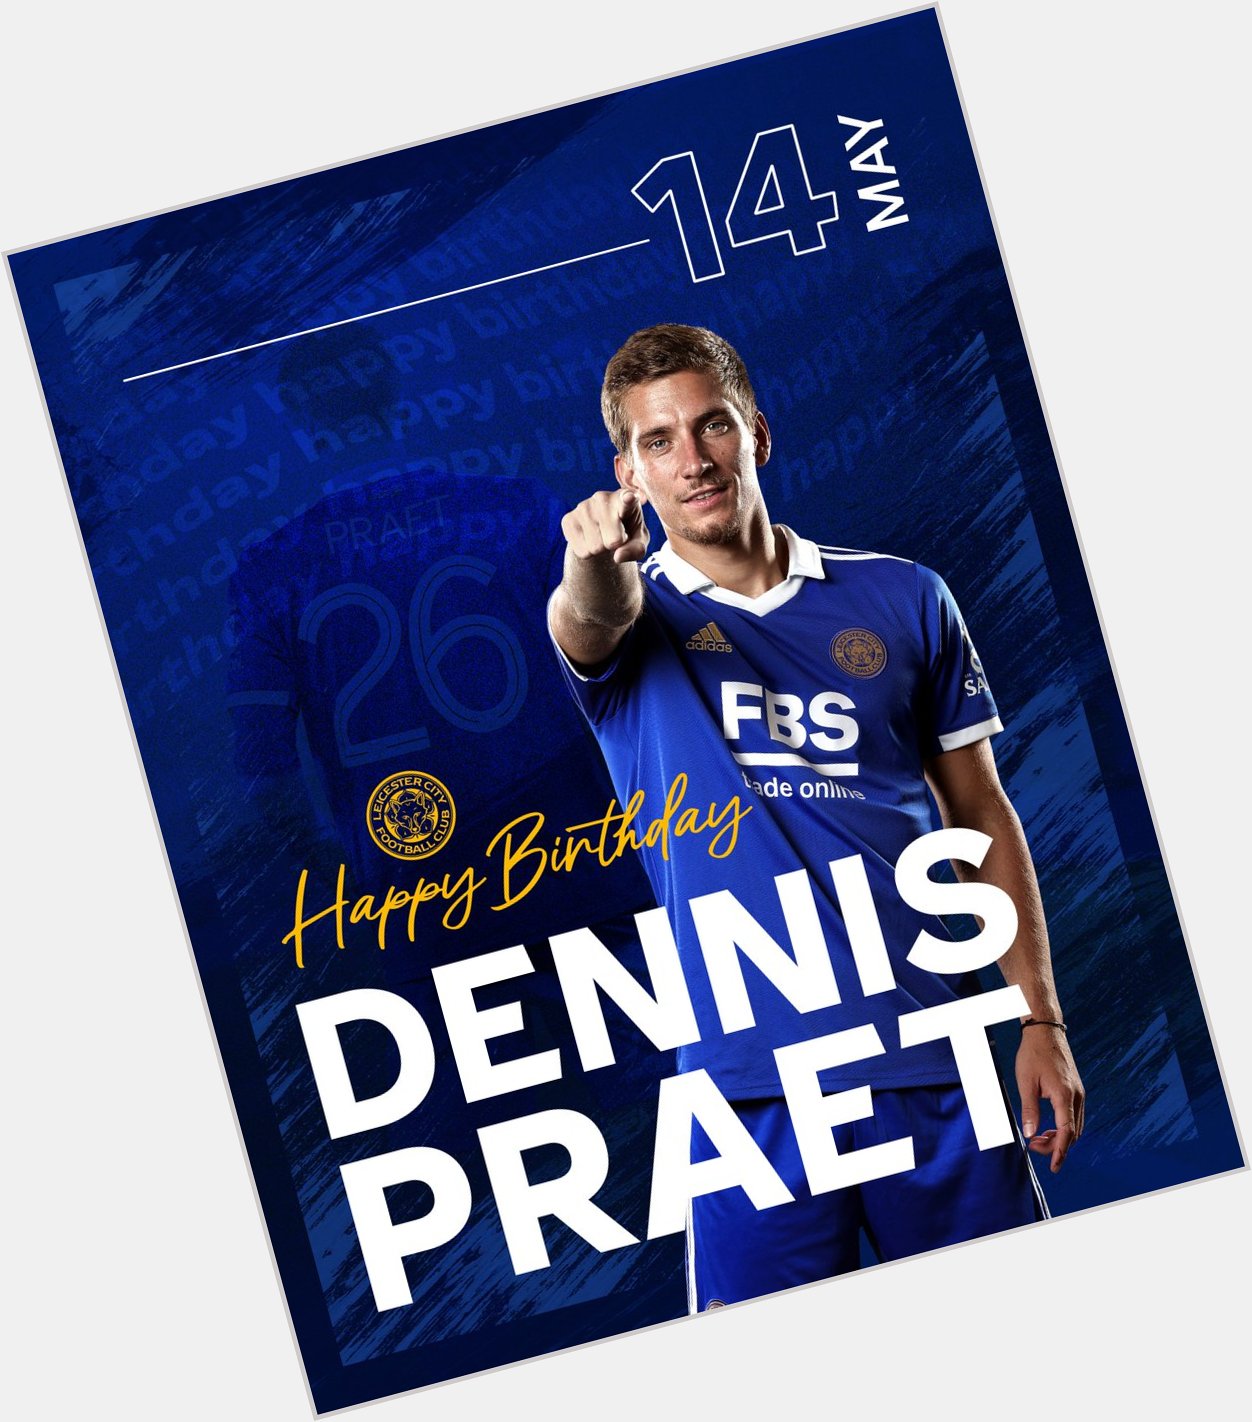 Wishing Dennis Praet a very happy birthday today! 